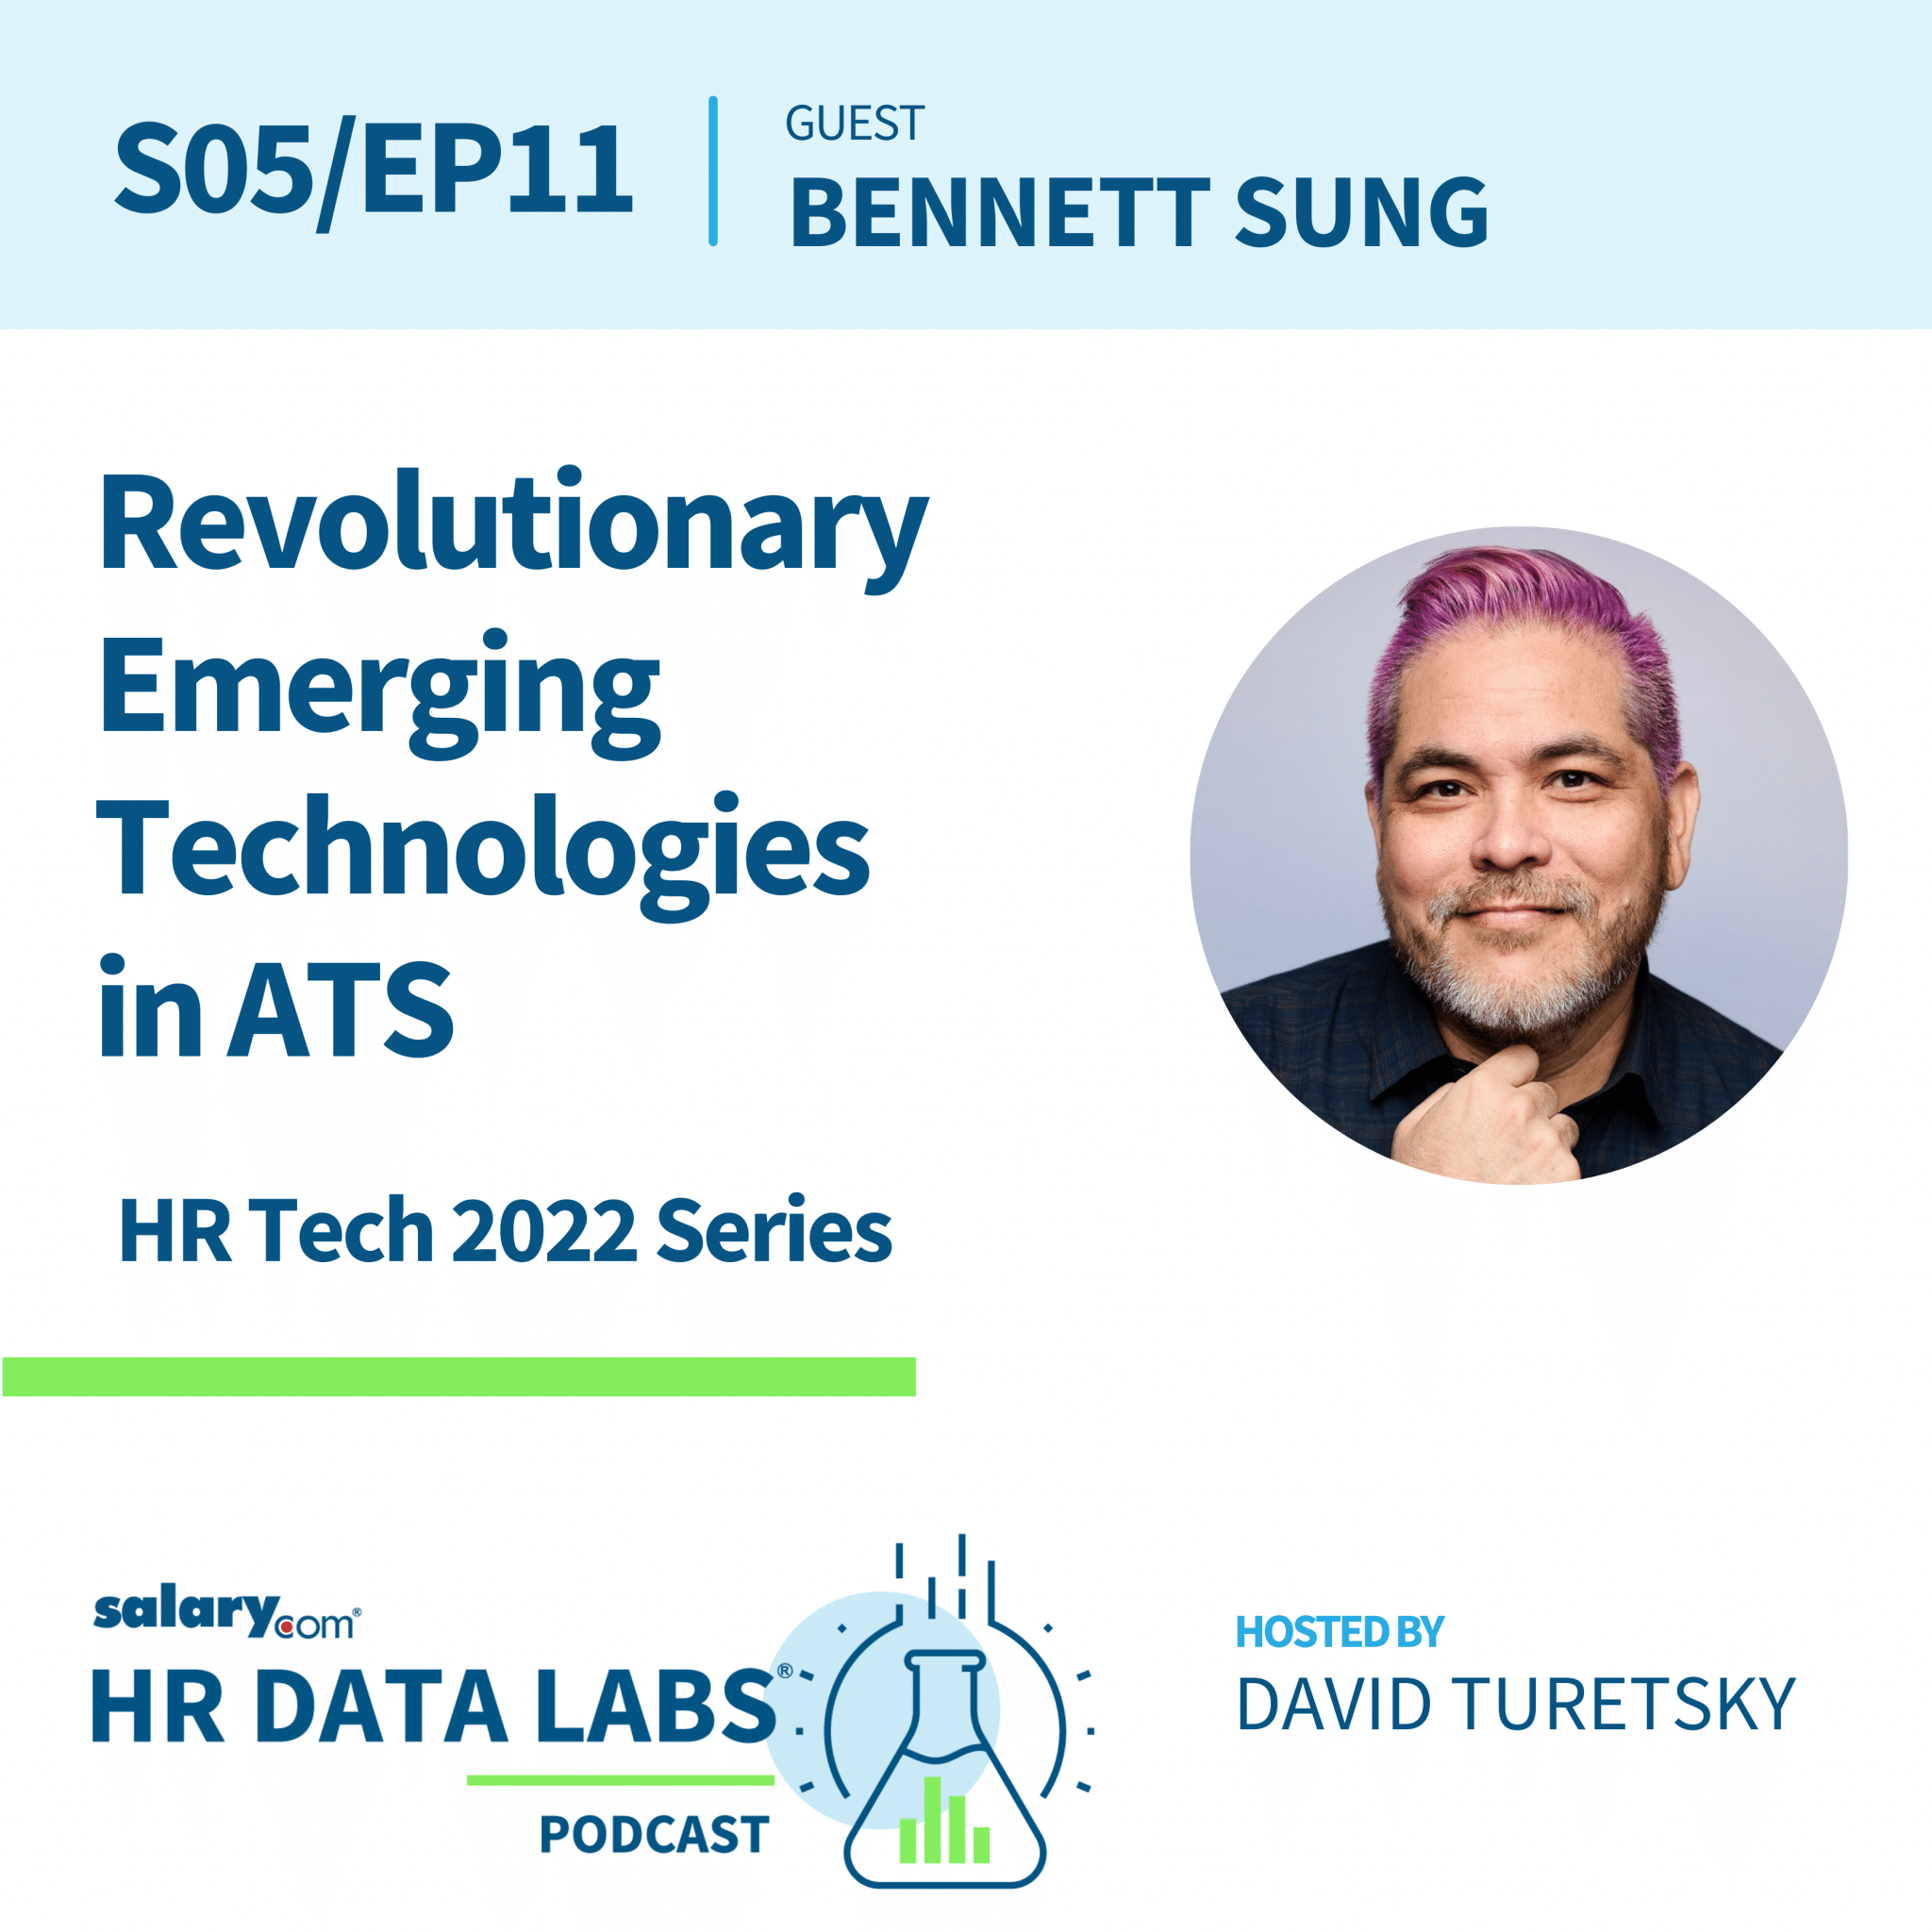 Bennett Sung – HR Tech 2022 Series – Revolutionary Emerging Technologies in ATS